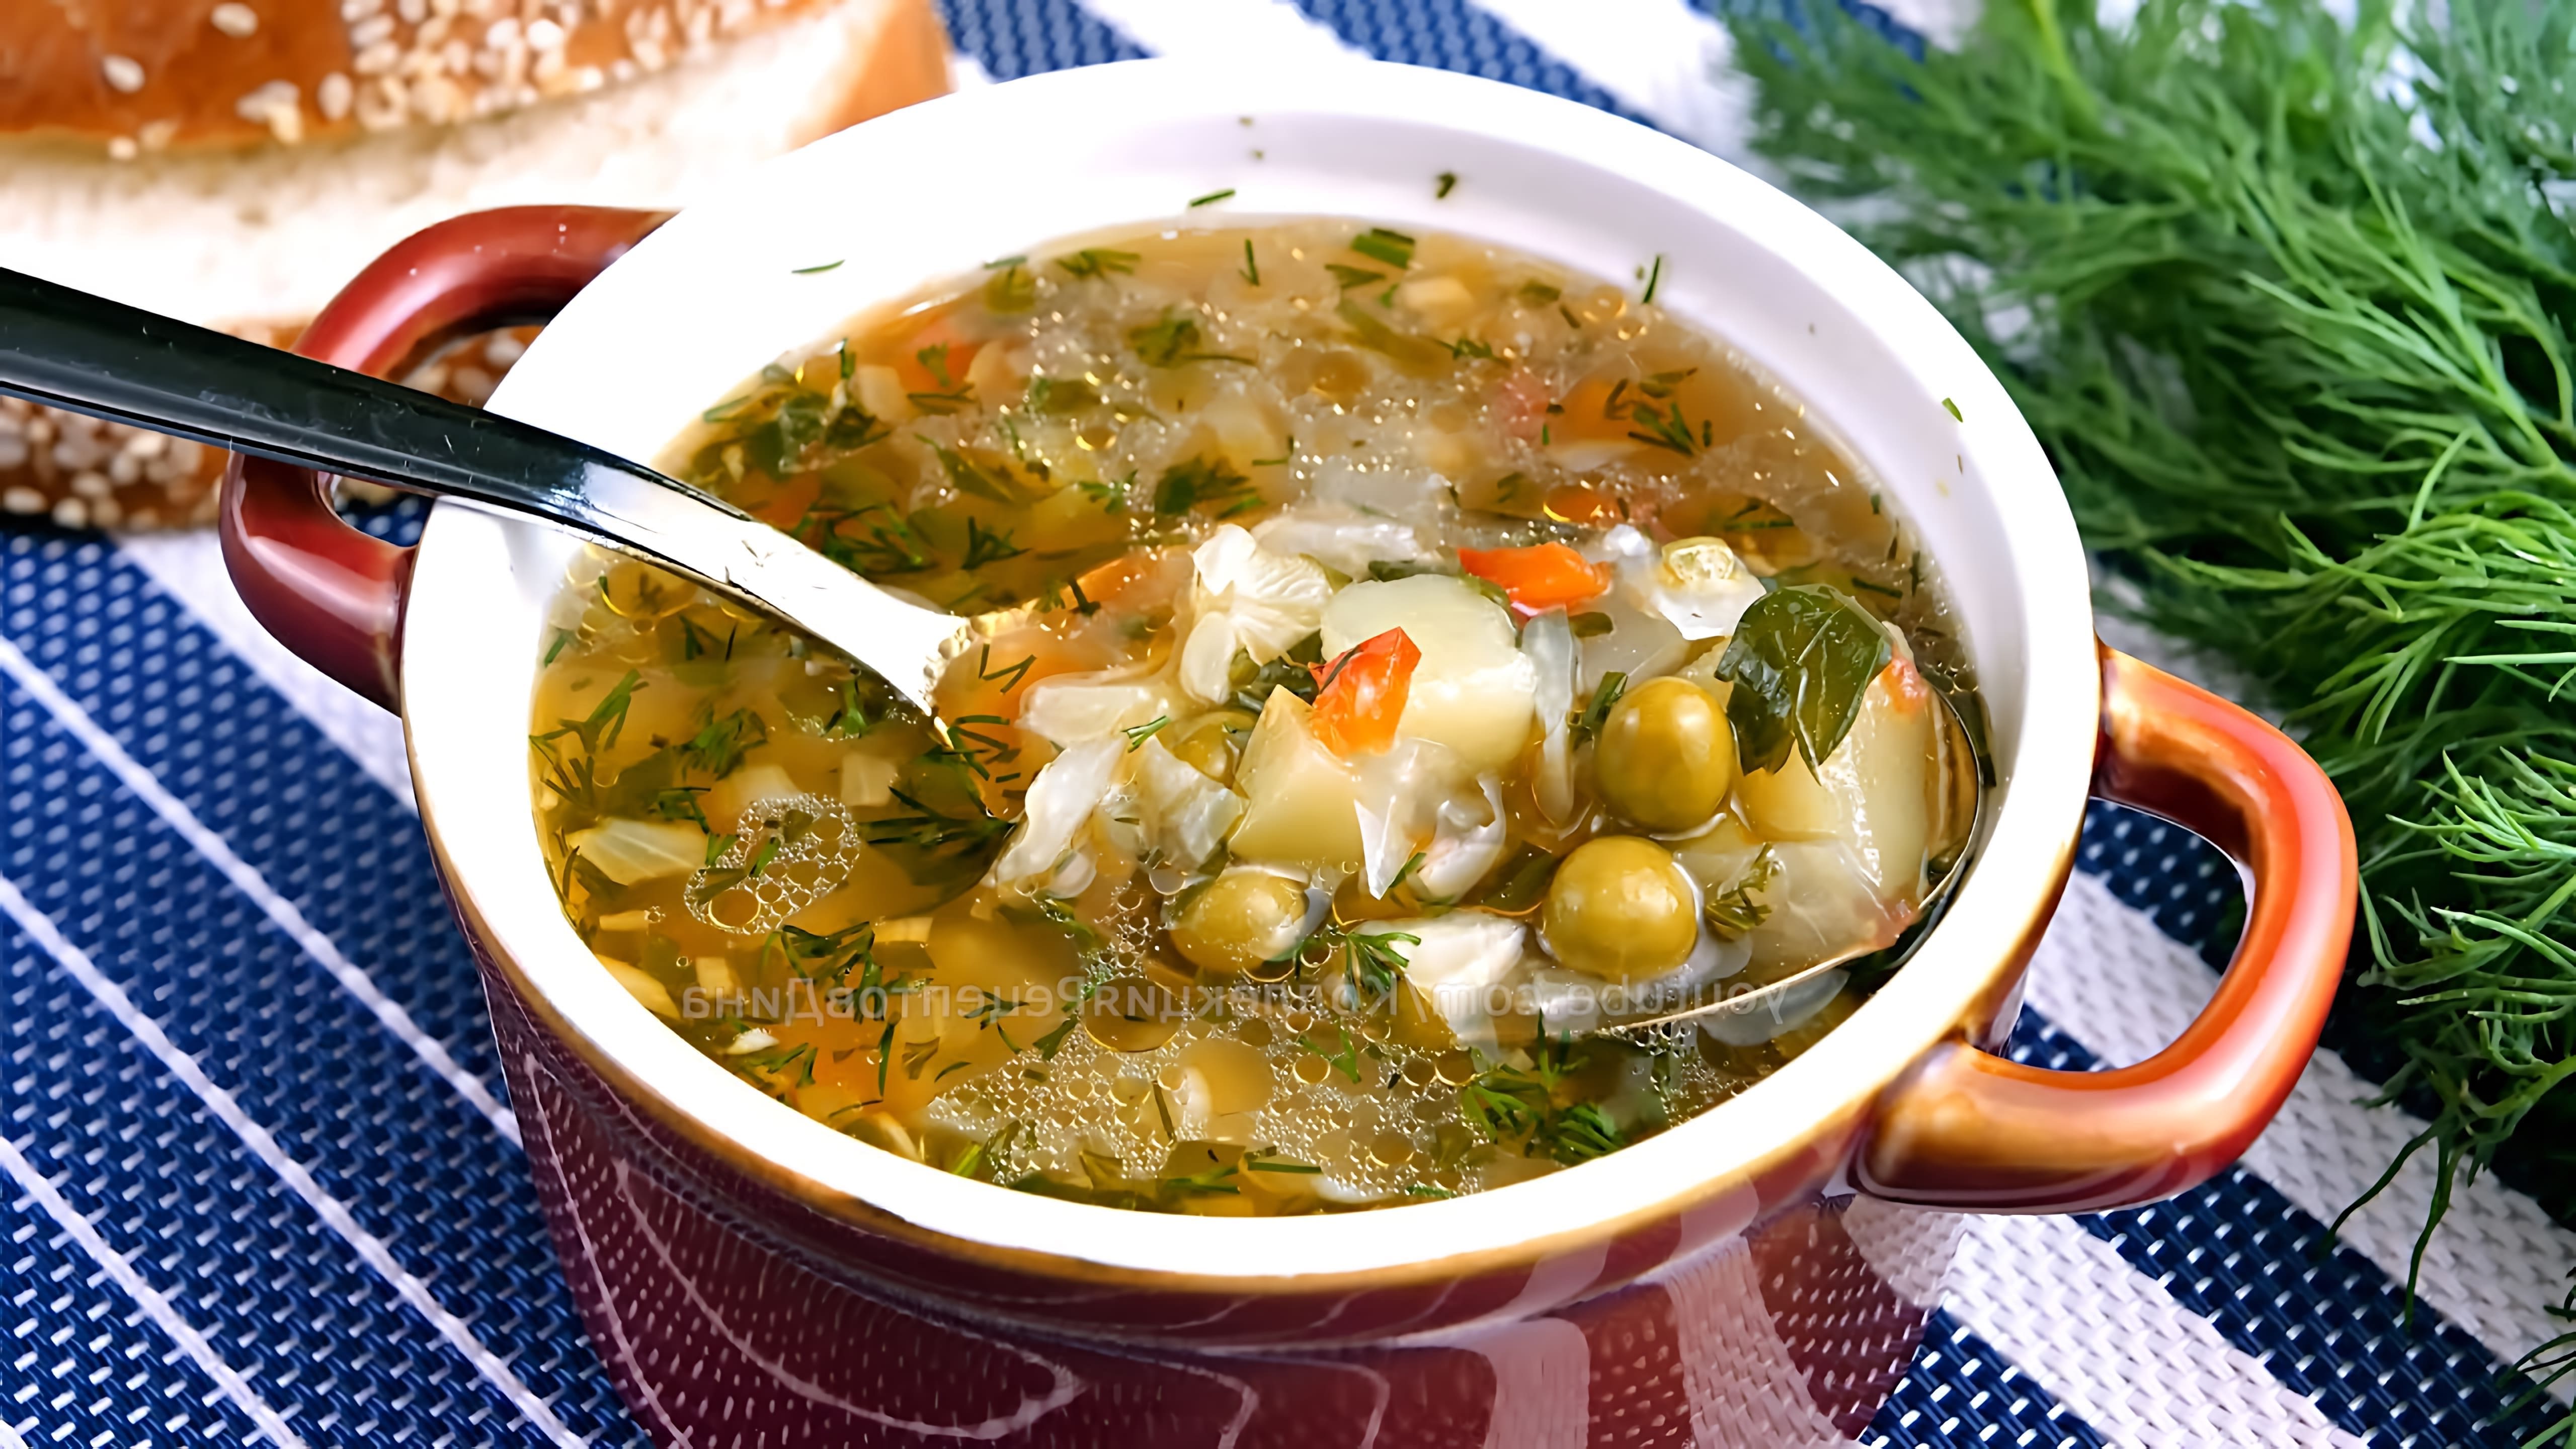 В этом видео демонстрируется процесс приготовления легкого овощного супа за 20 минут